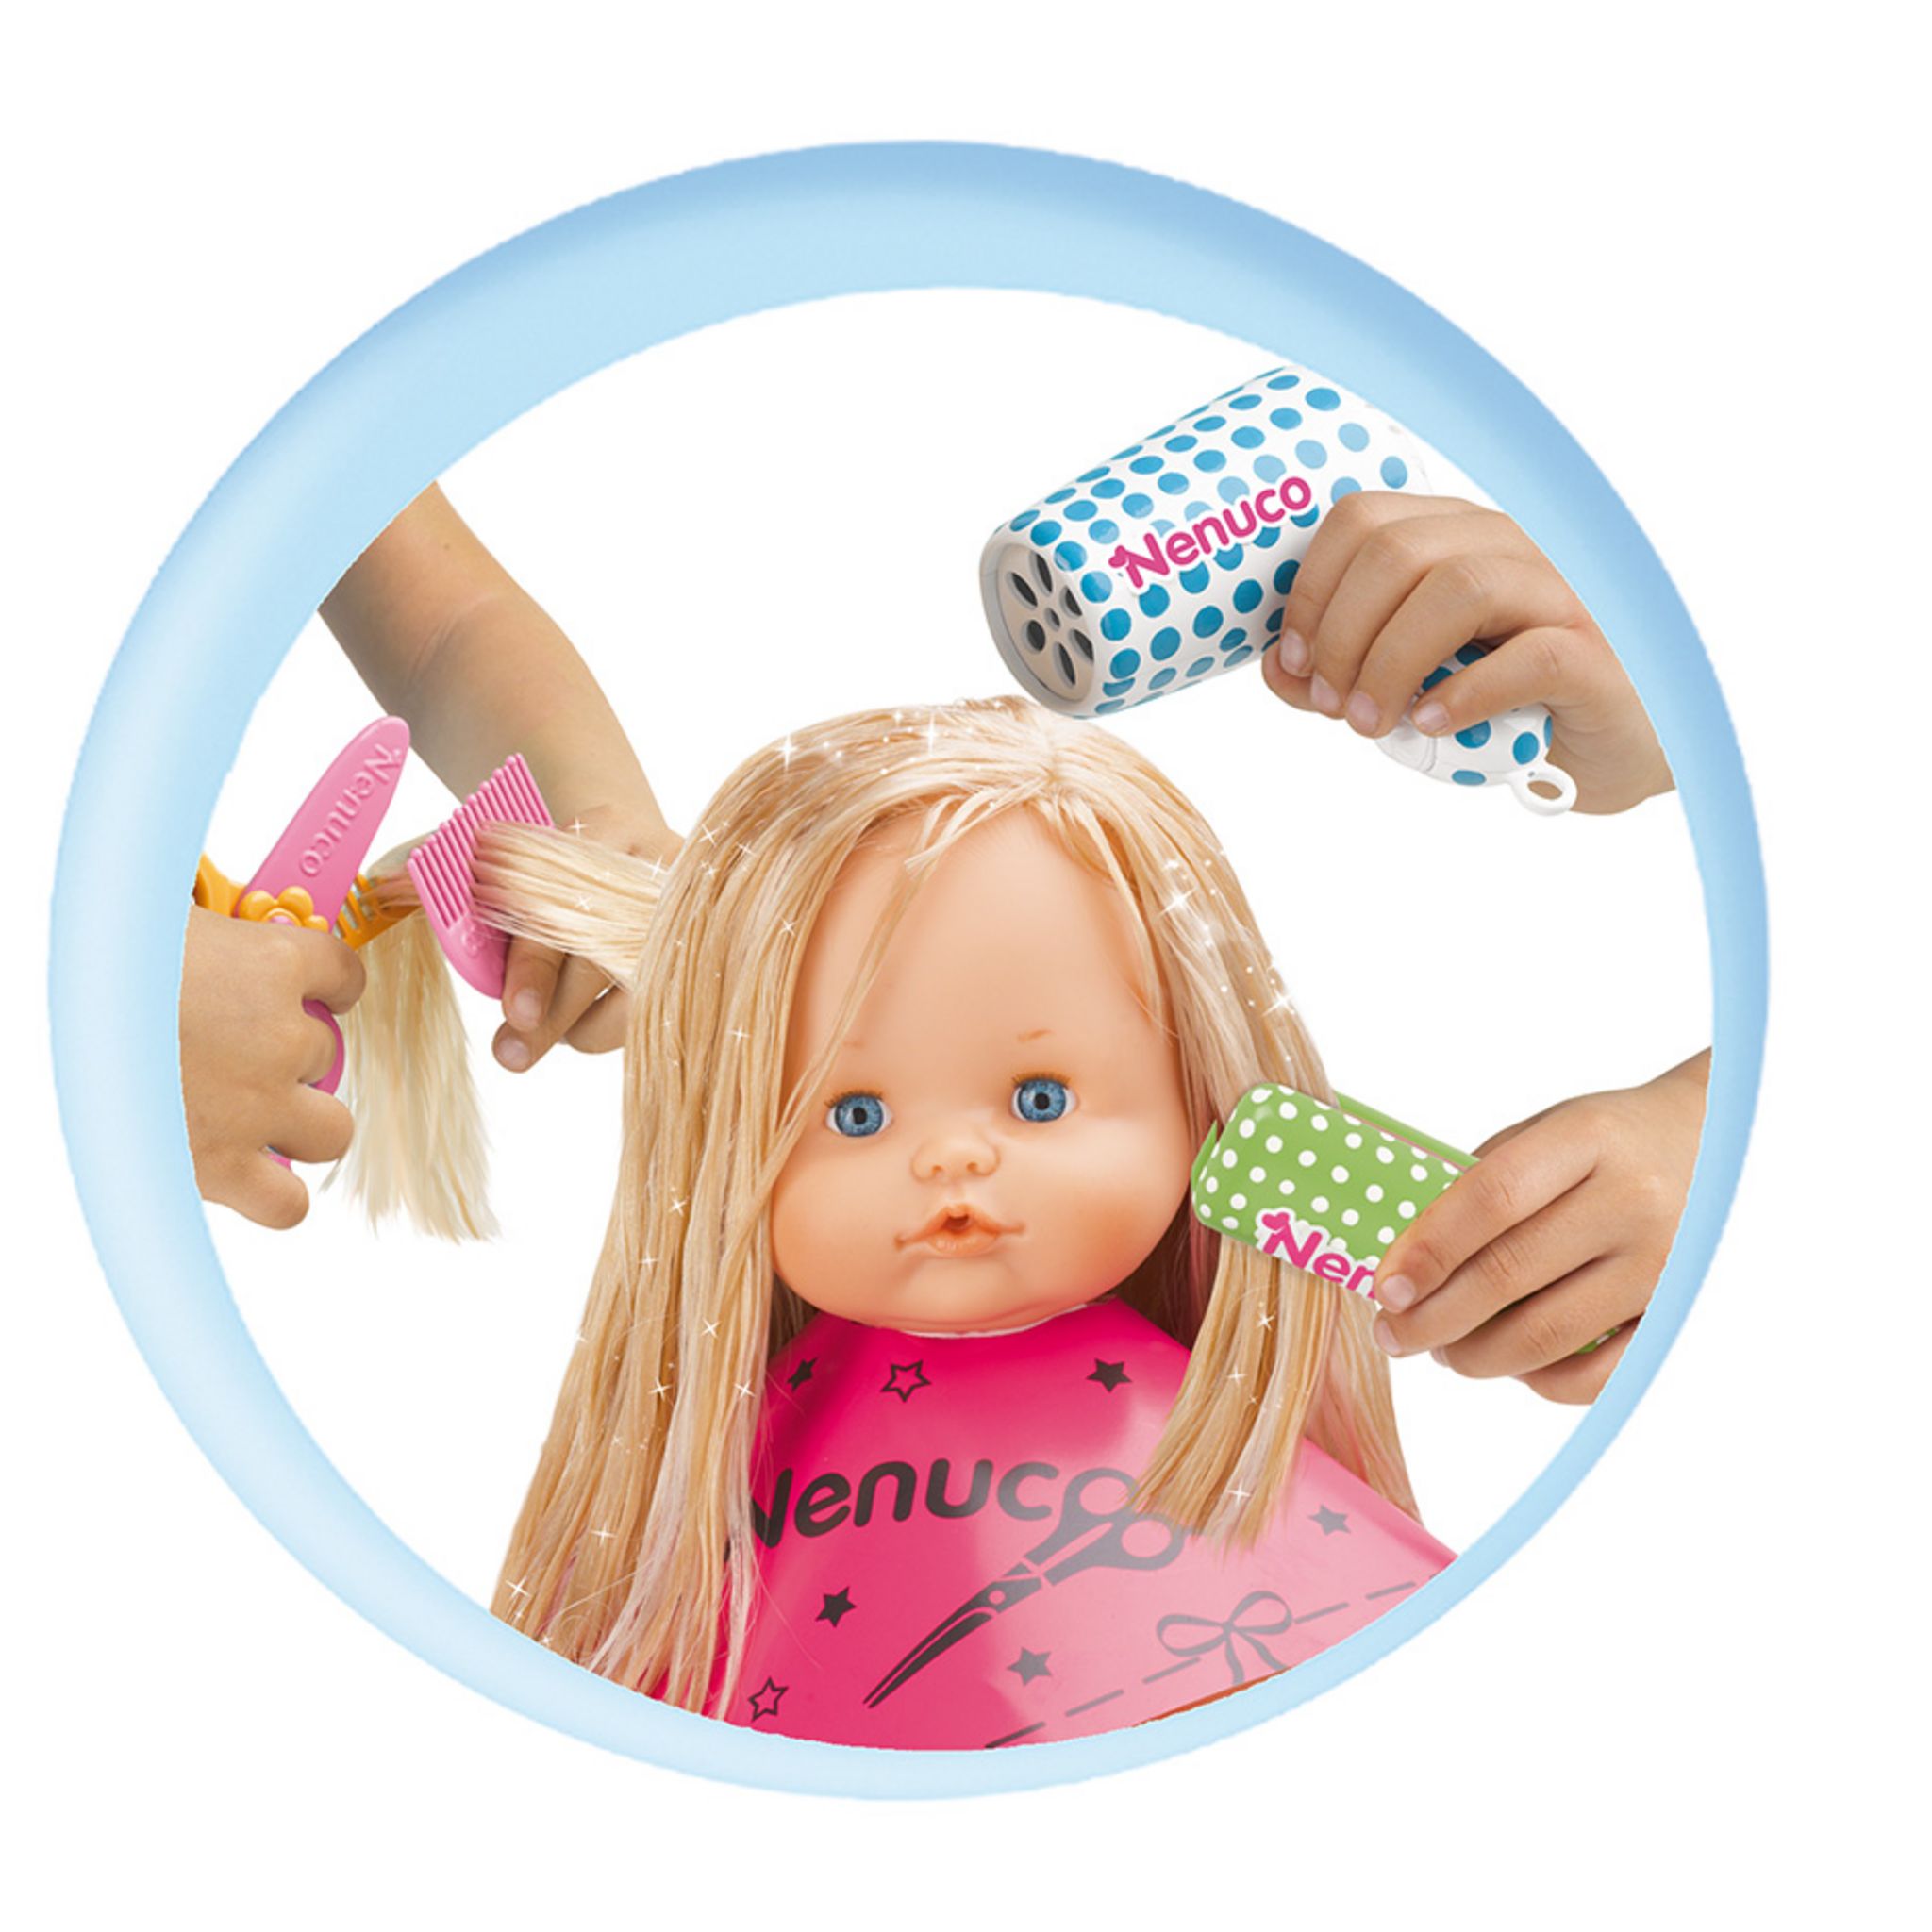 Пупс с волосами. Кукла Ненуко парикмахерская. Кукла для расчесывания для детей. Куклу с волосами и с расческой. Волосы для кукол.